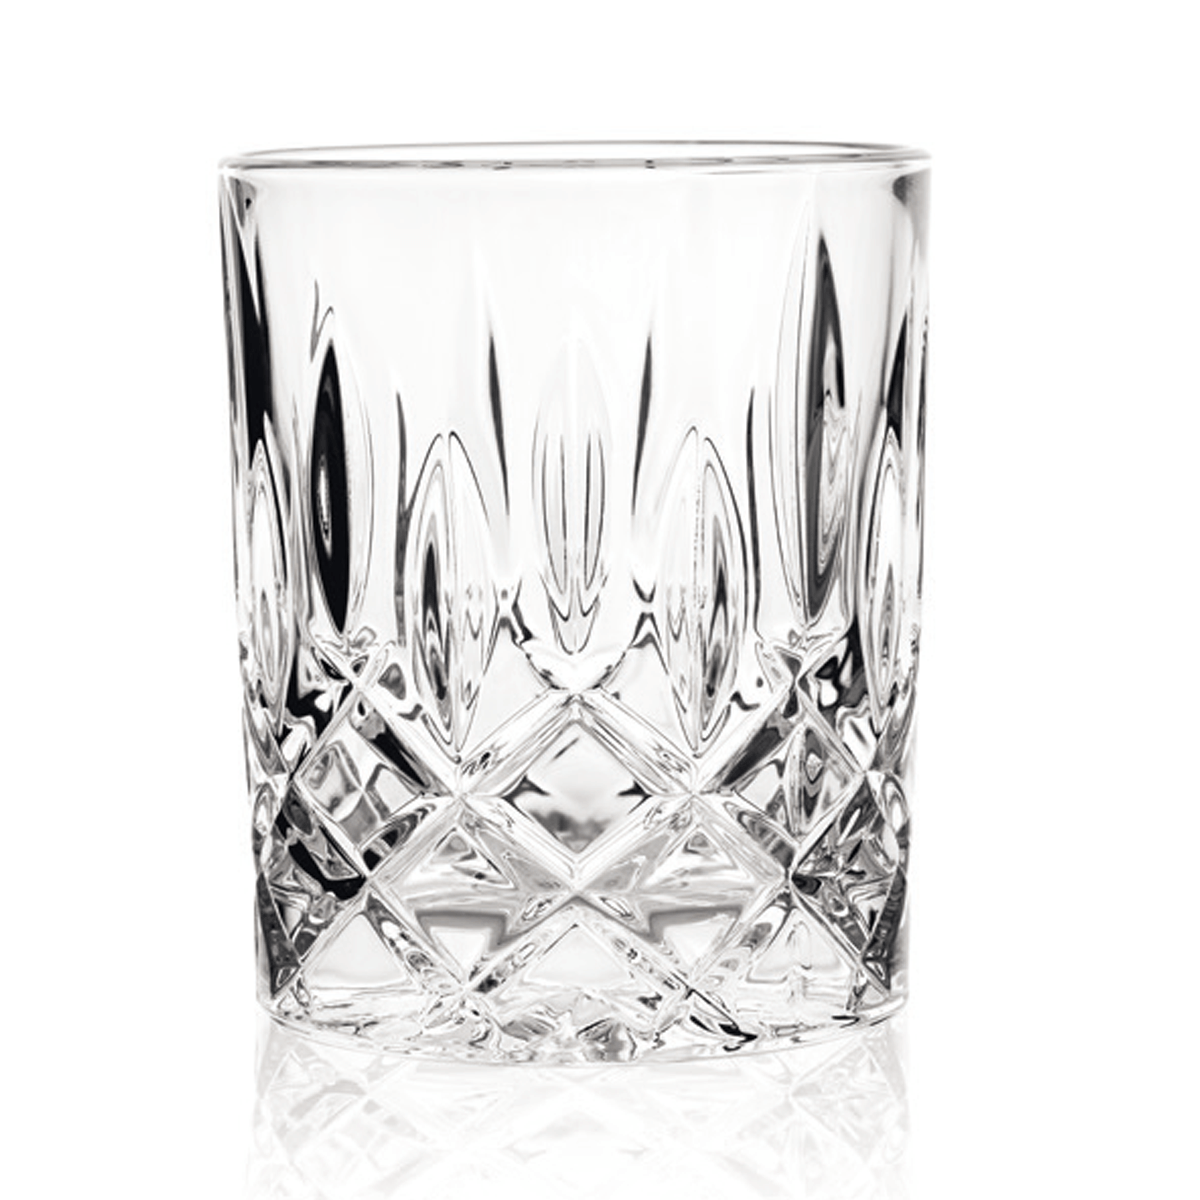  Kryształowe szklanki do whisky z kolekcji Klubu Domu Wina